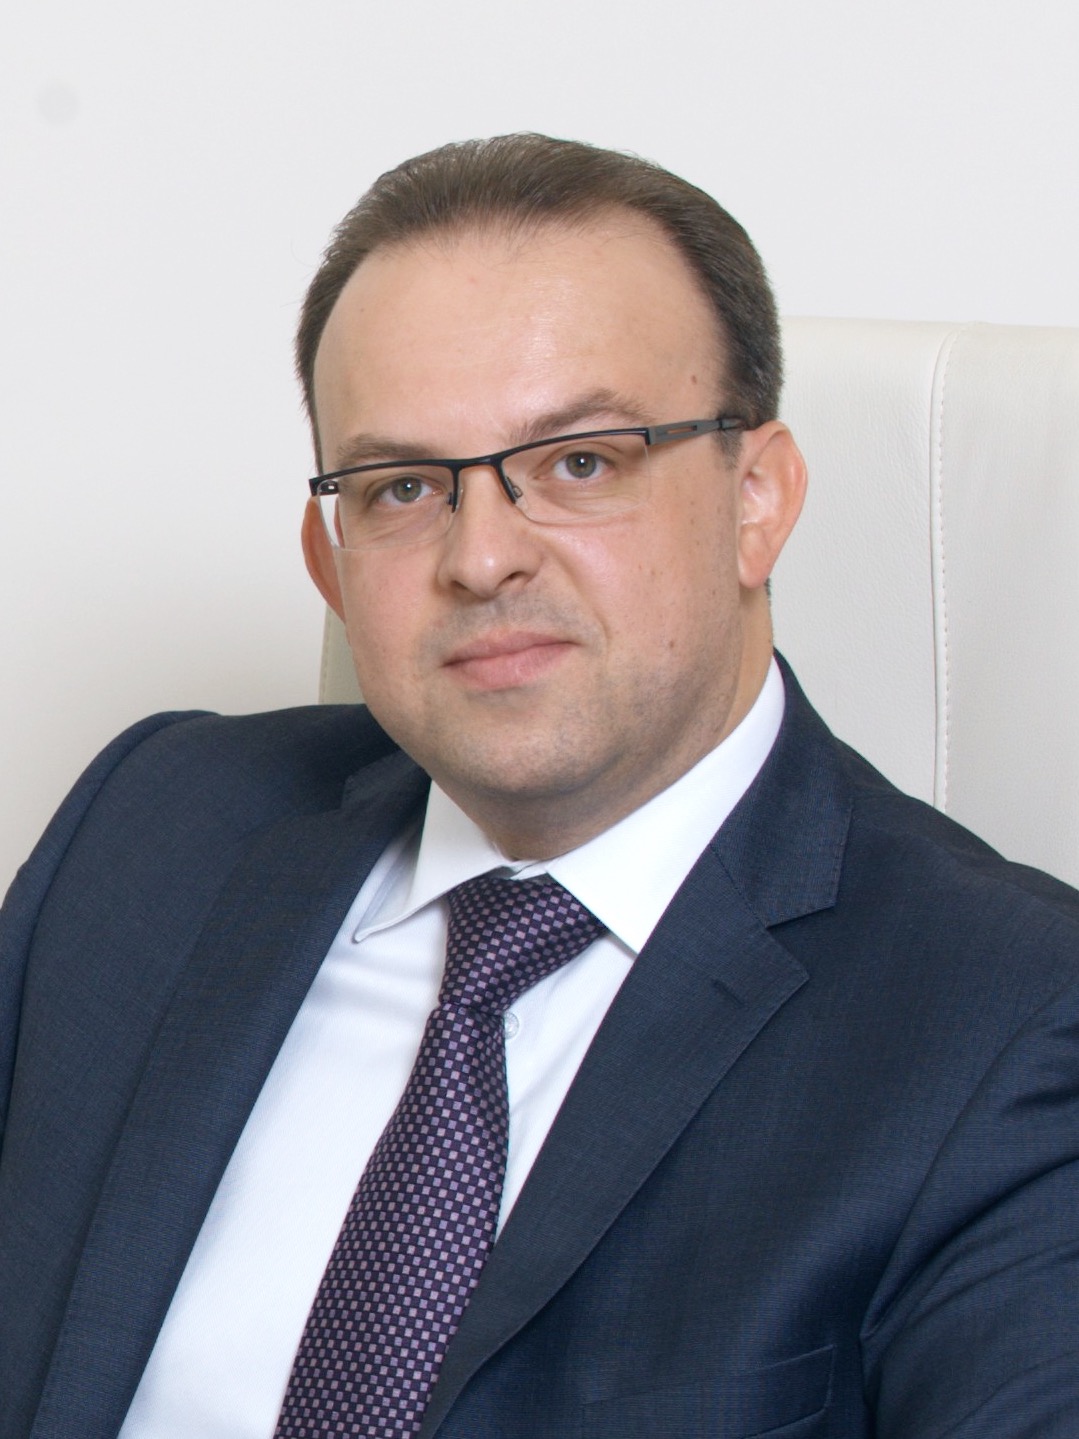 Еременко Руслан Юрьевич — руководитель департамента корпоративной сети — старший вице-президент банка ВТБ